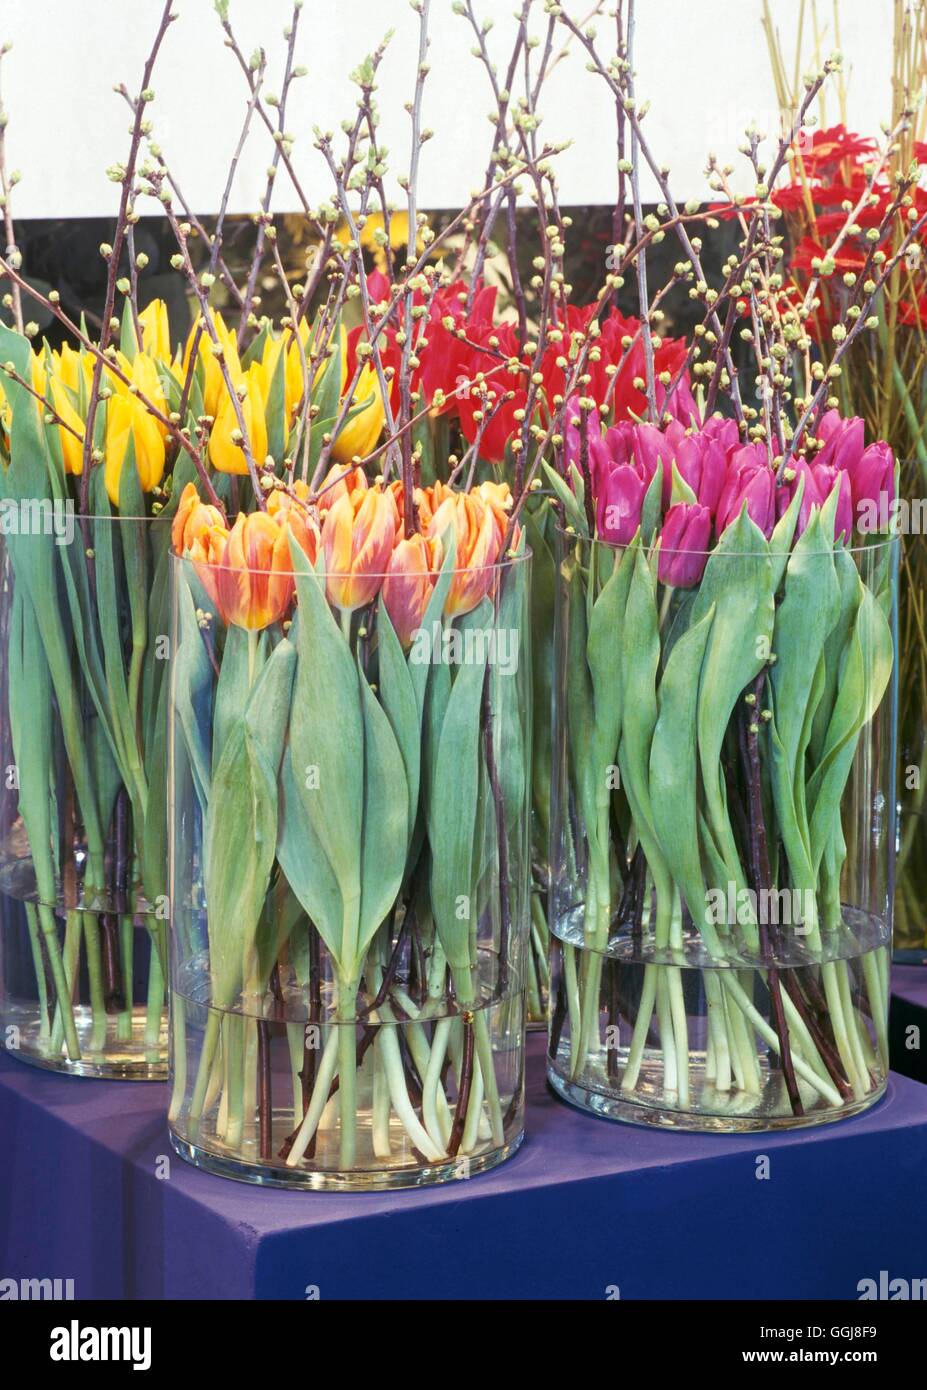 Arrangement de fleurs coupées/- Tulipe comme fleurs coupées loin093322 /Photosho Banque D'Images